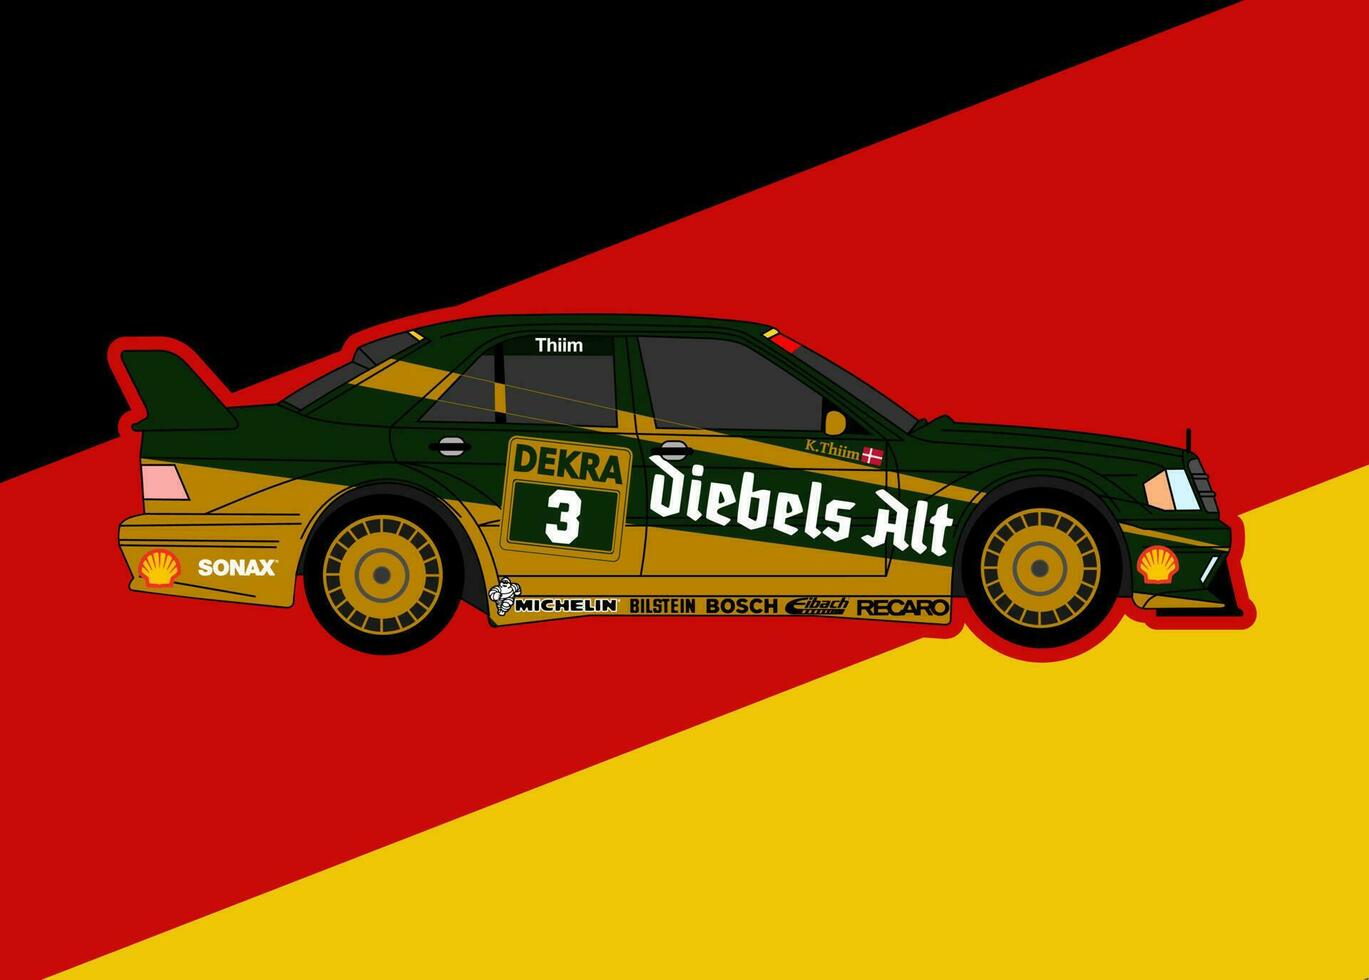 allemand classique courses voiture affiche de oliver pohlmann wikimédia vecteur